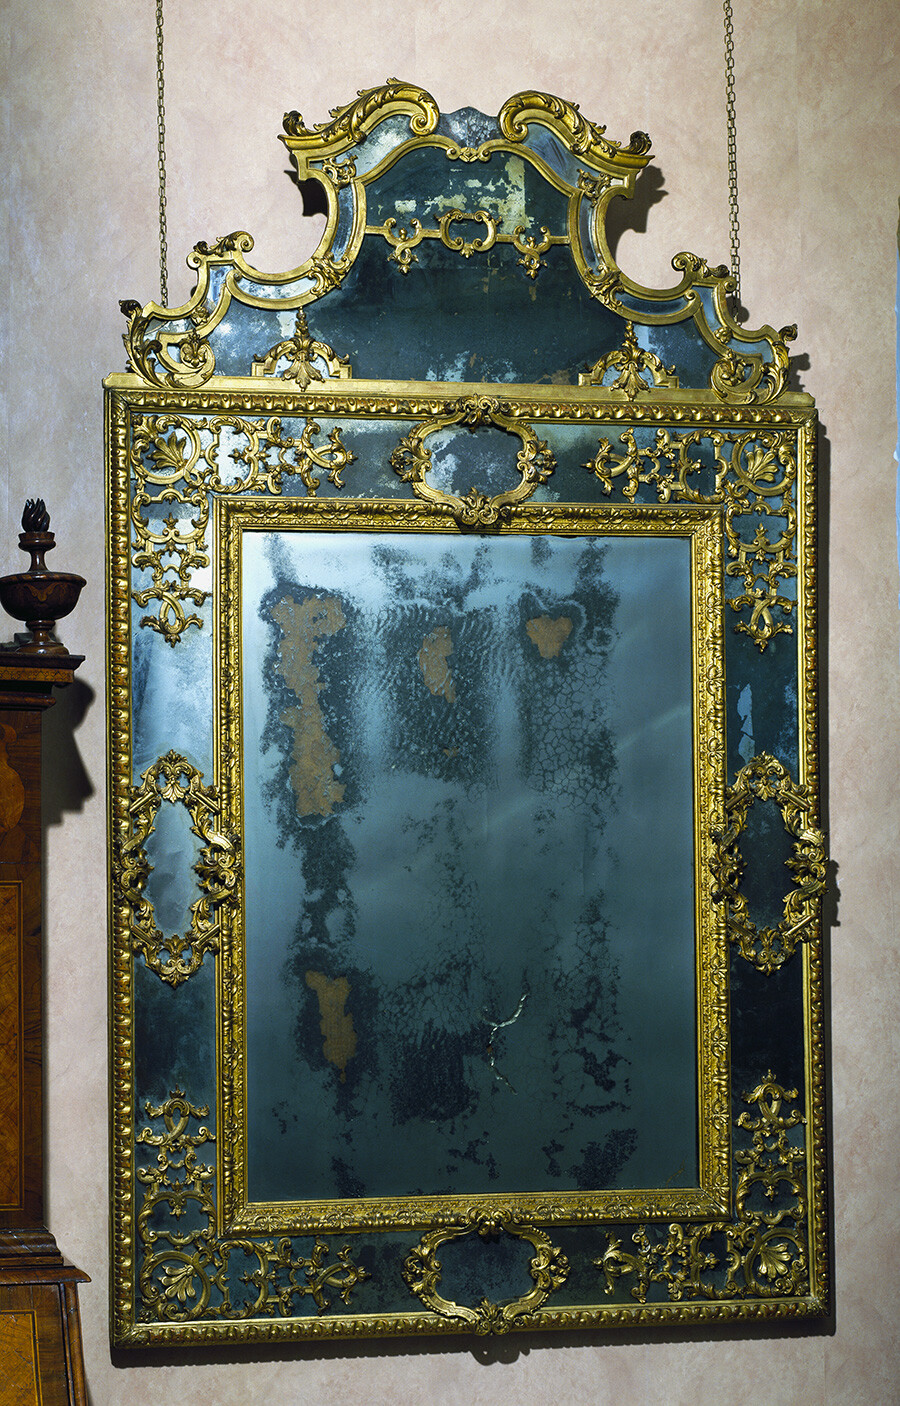 Espejo veneciano de estilo barroco.  Este tipo de espejos eran utilizados por las nobles bellezas rusas de la época.